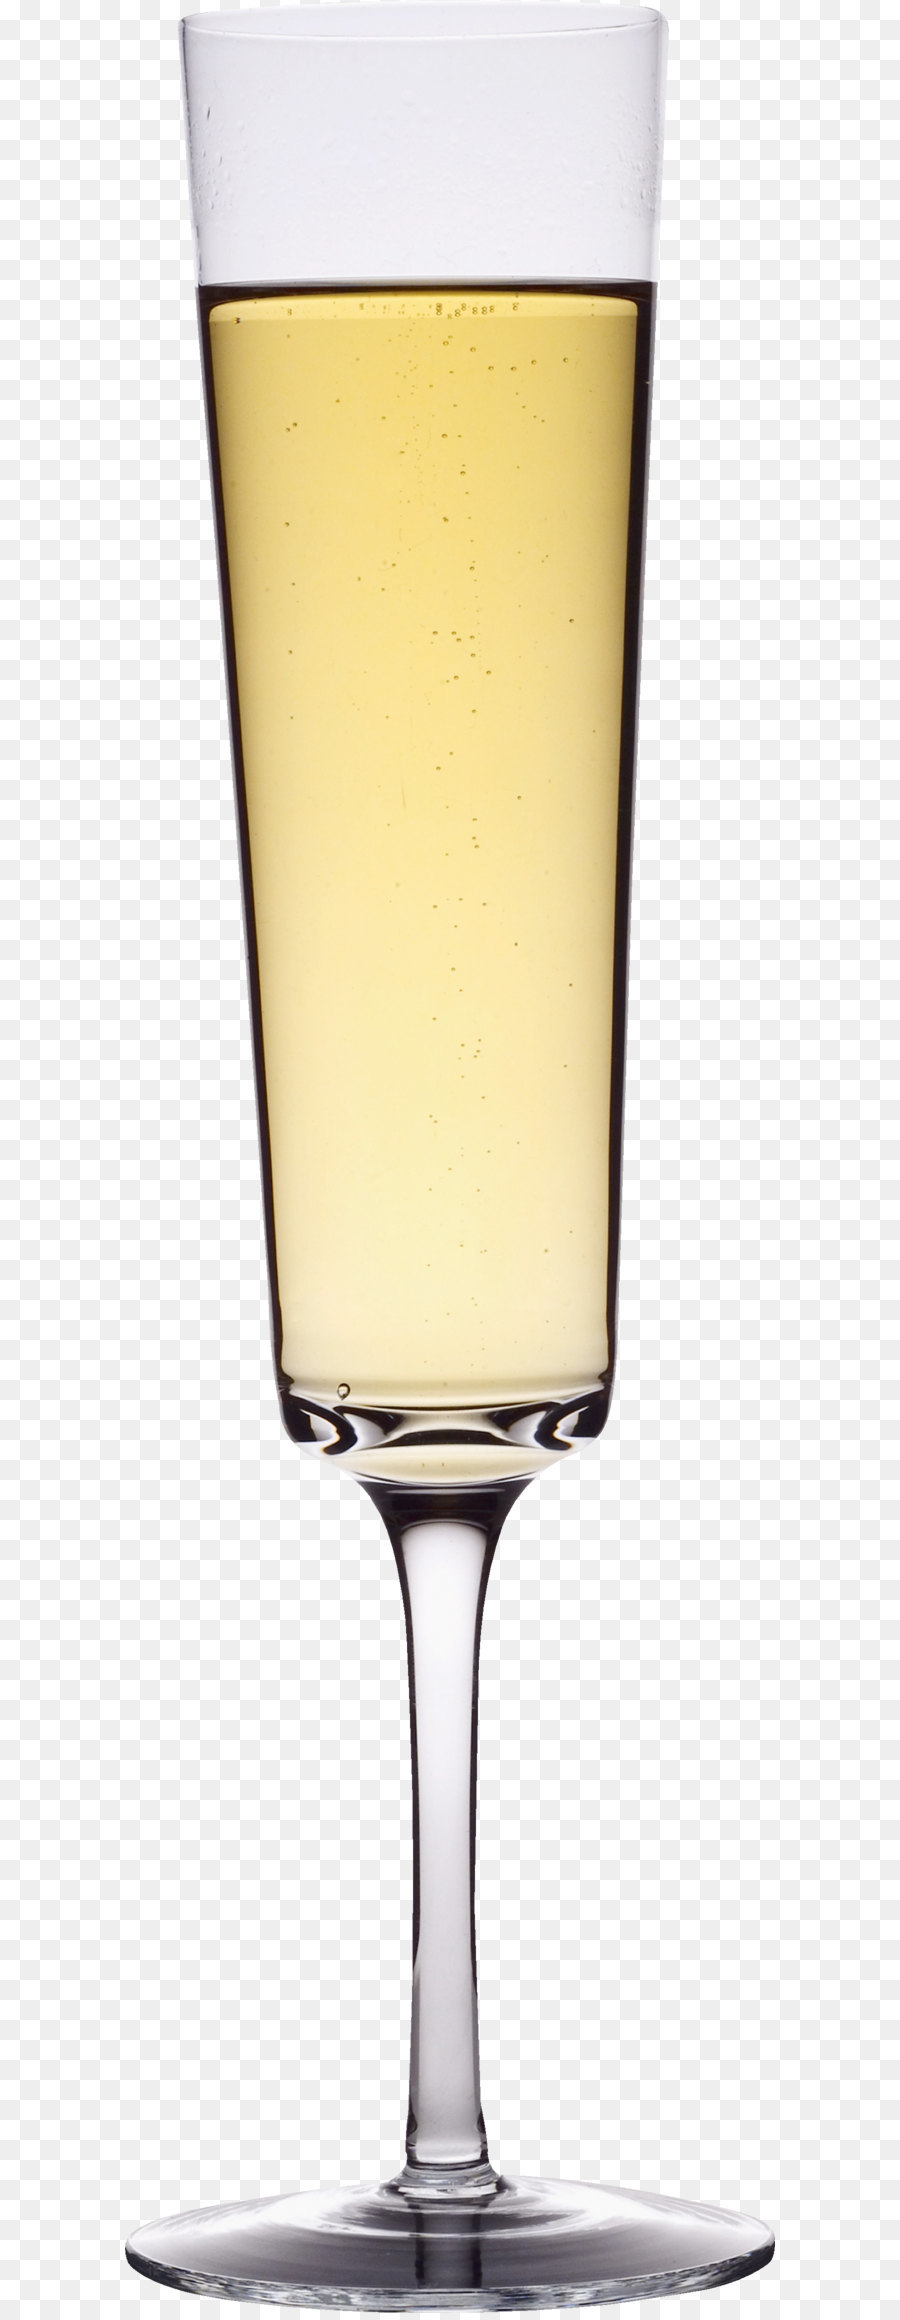 Champagne Cocktail bicchiere di Vino - vetro immagine png